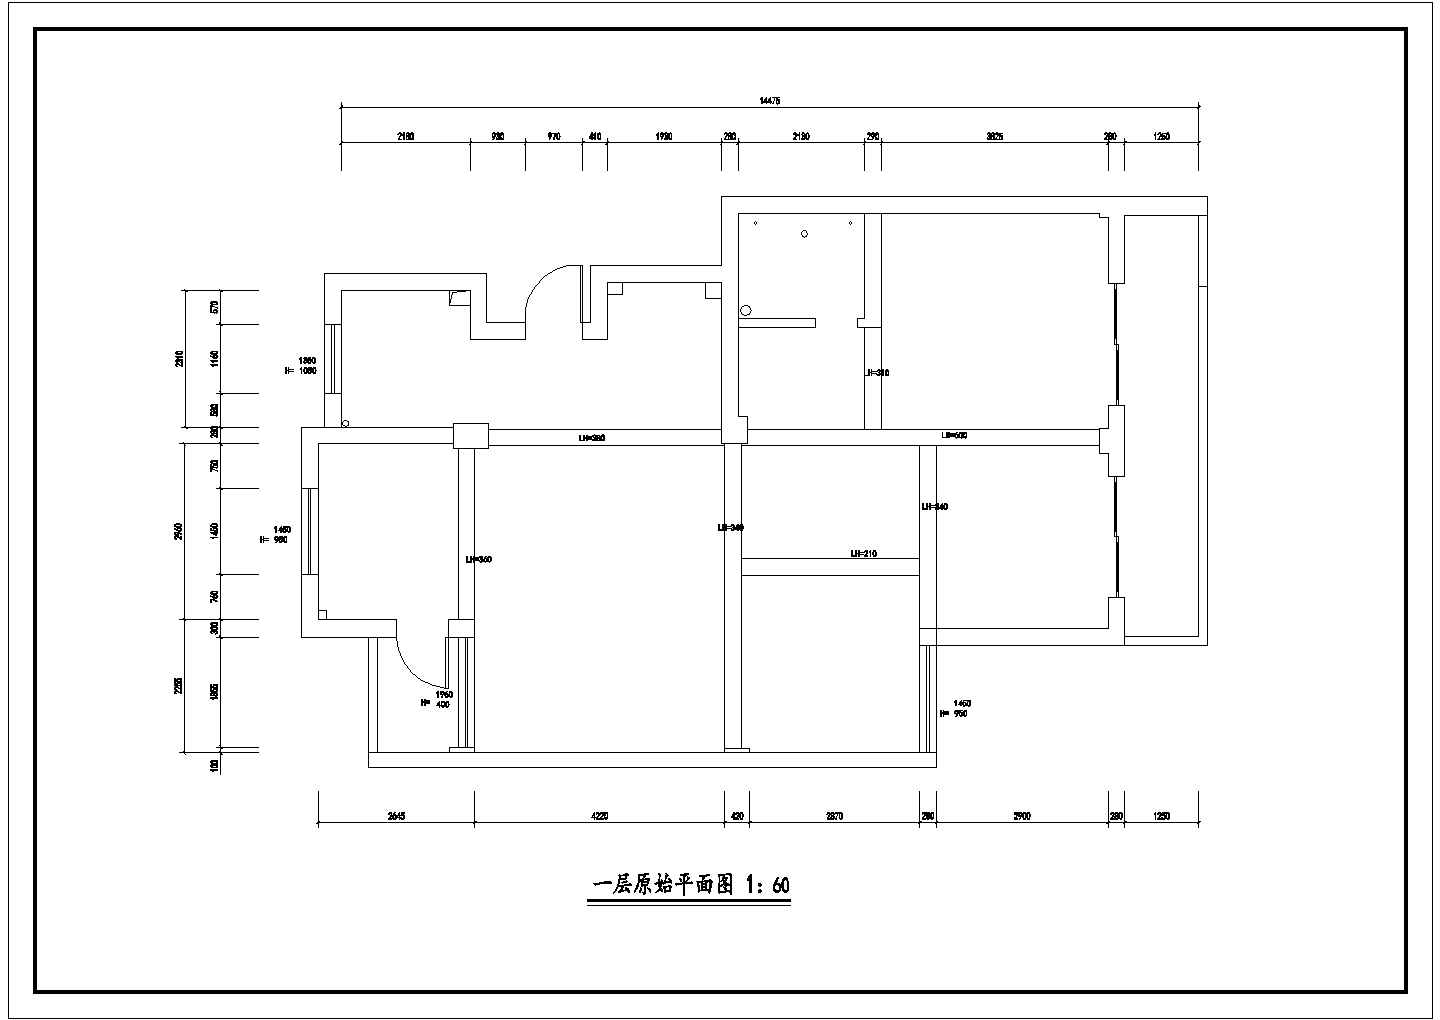 复旦澜泊湾某栋户型室内装修全套施工CAD图纸